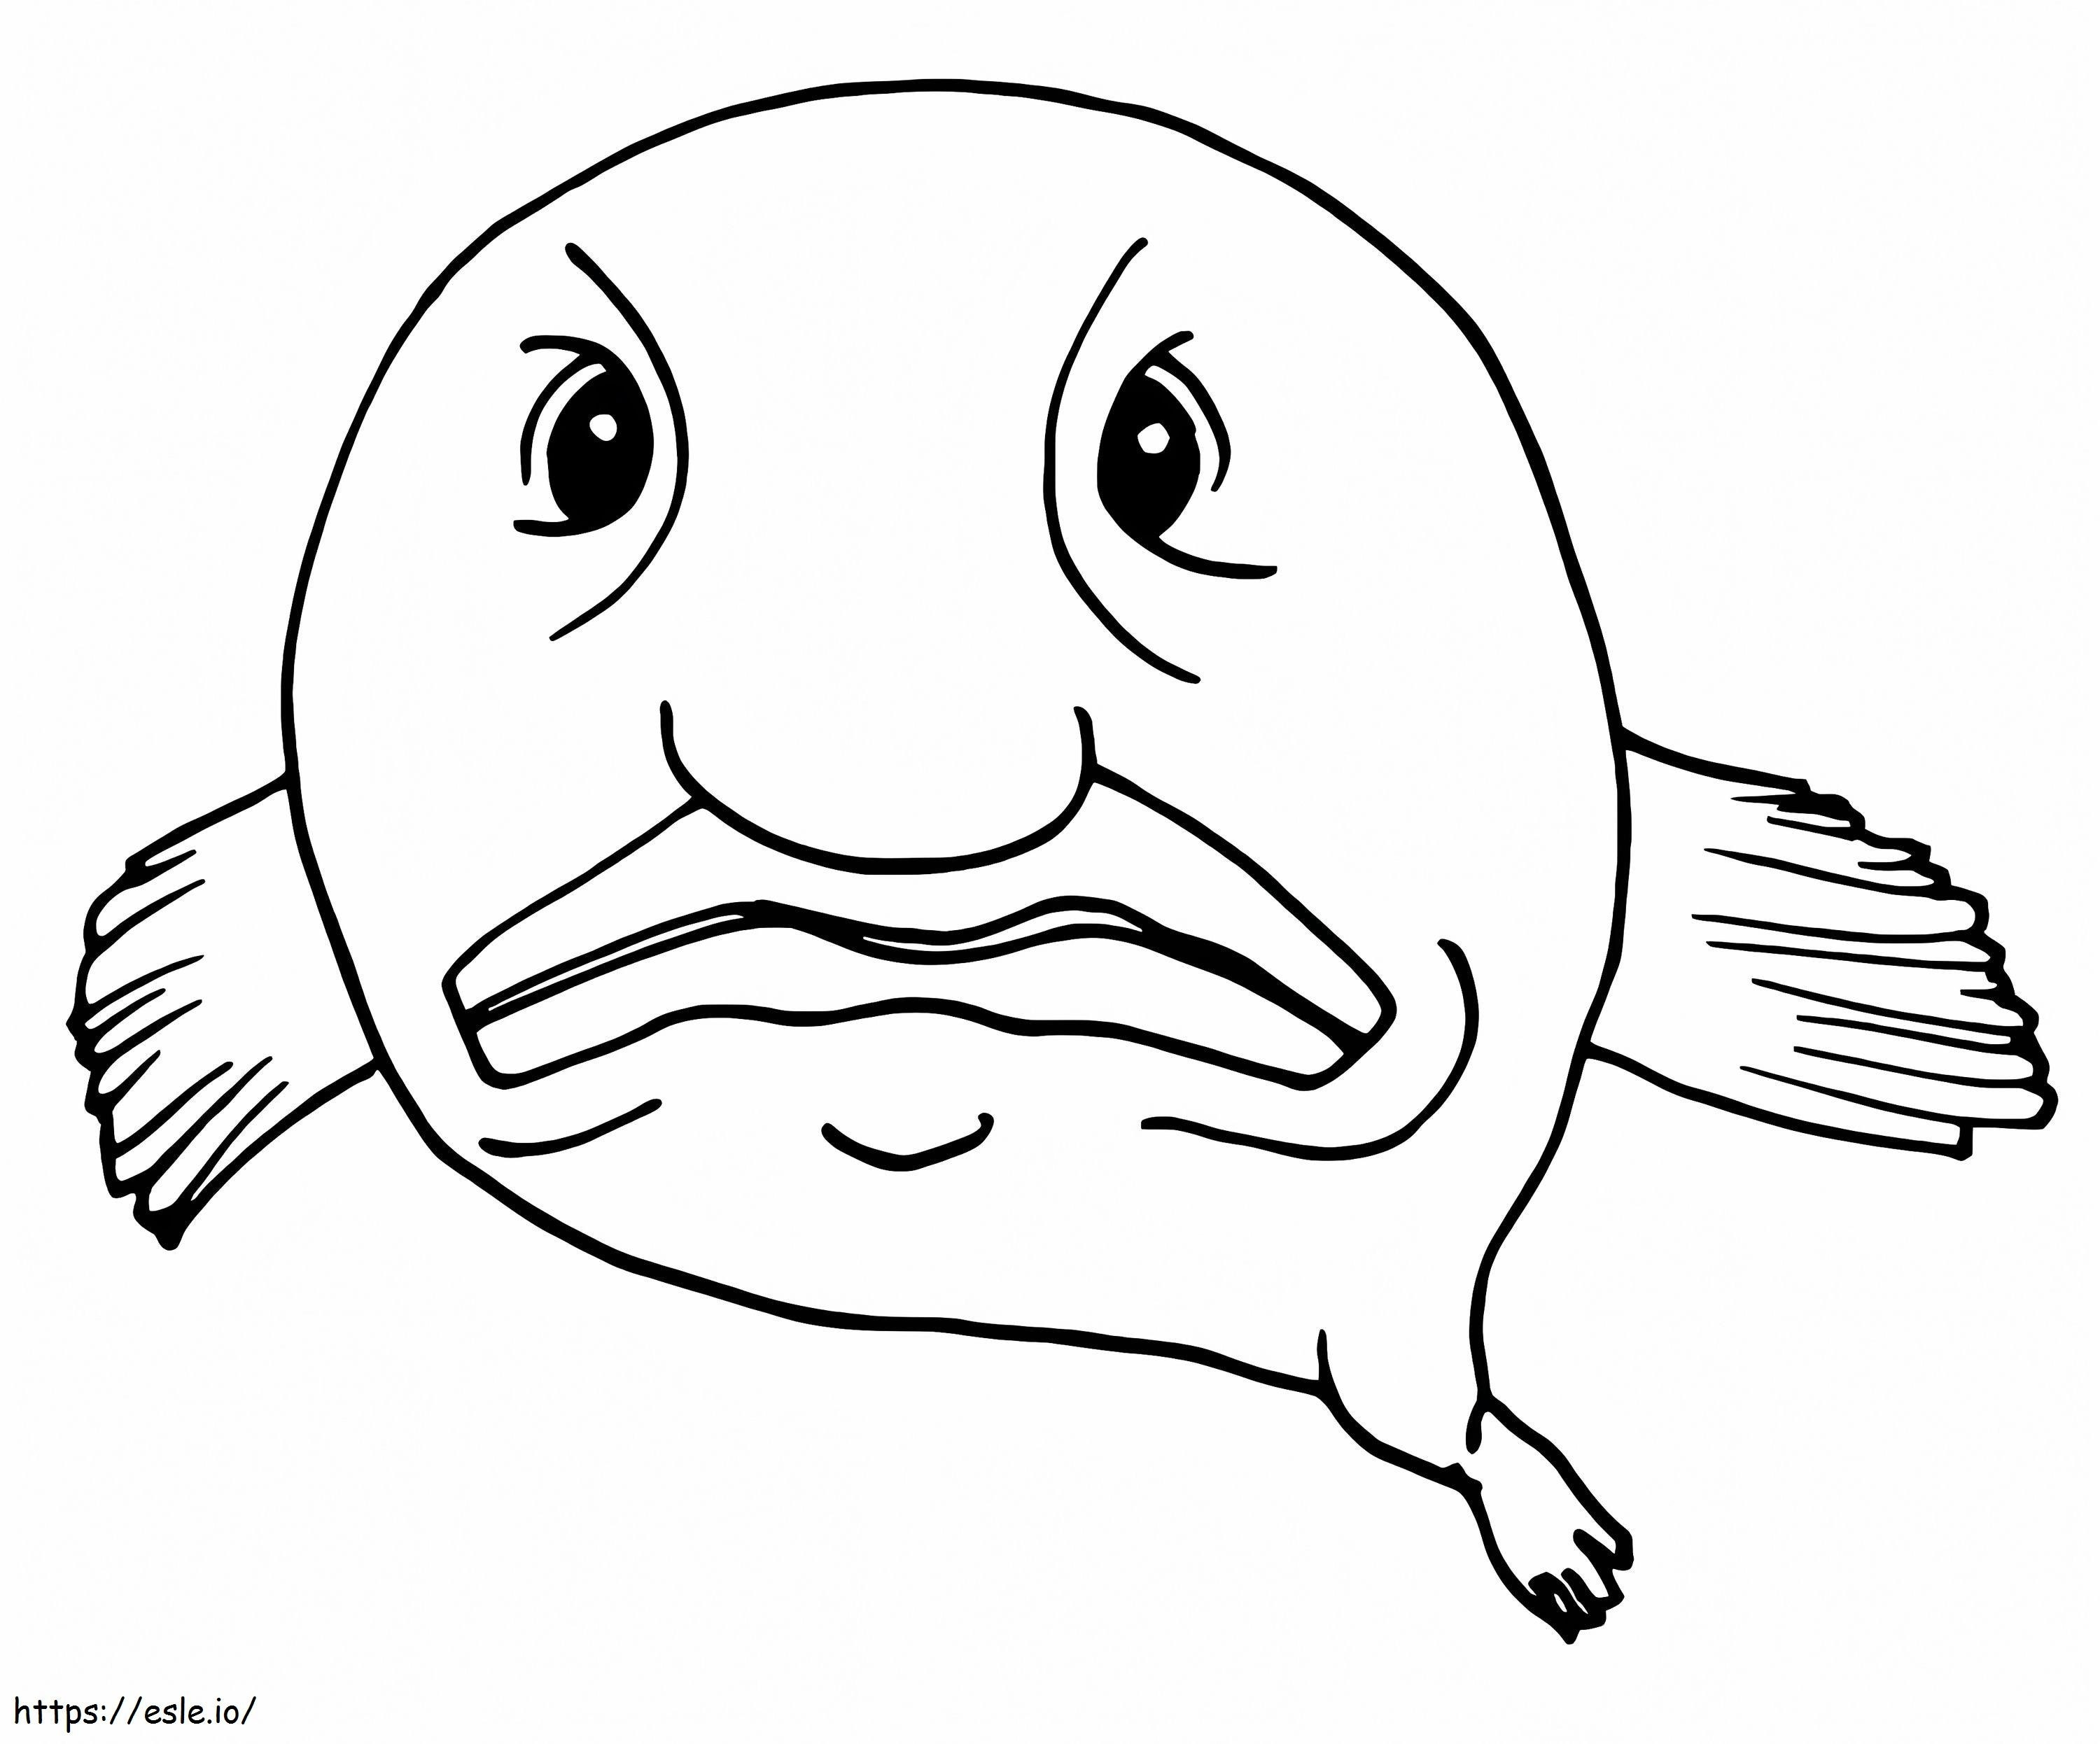 Wütender Klecksfisch ausmalbilder